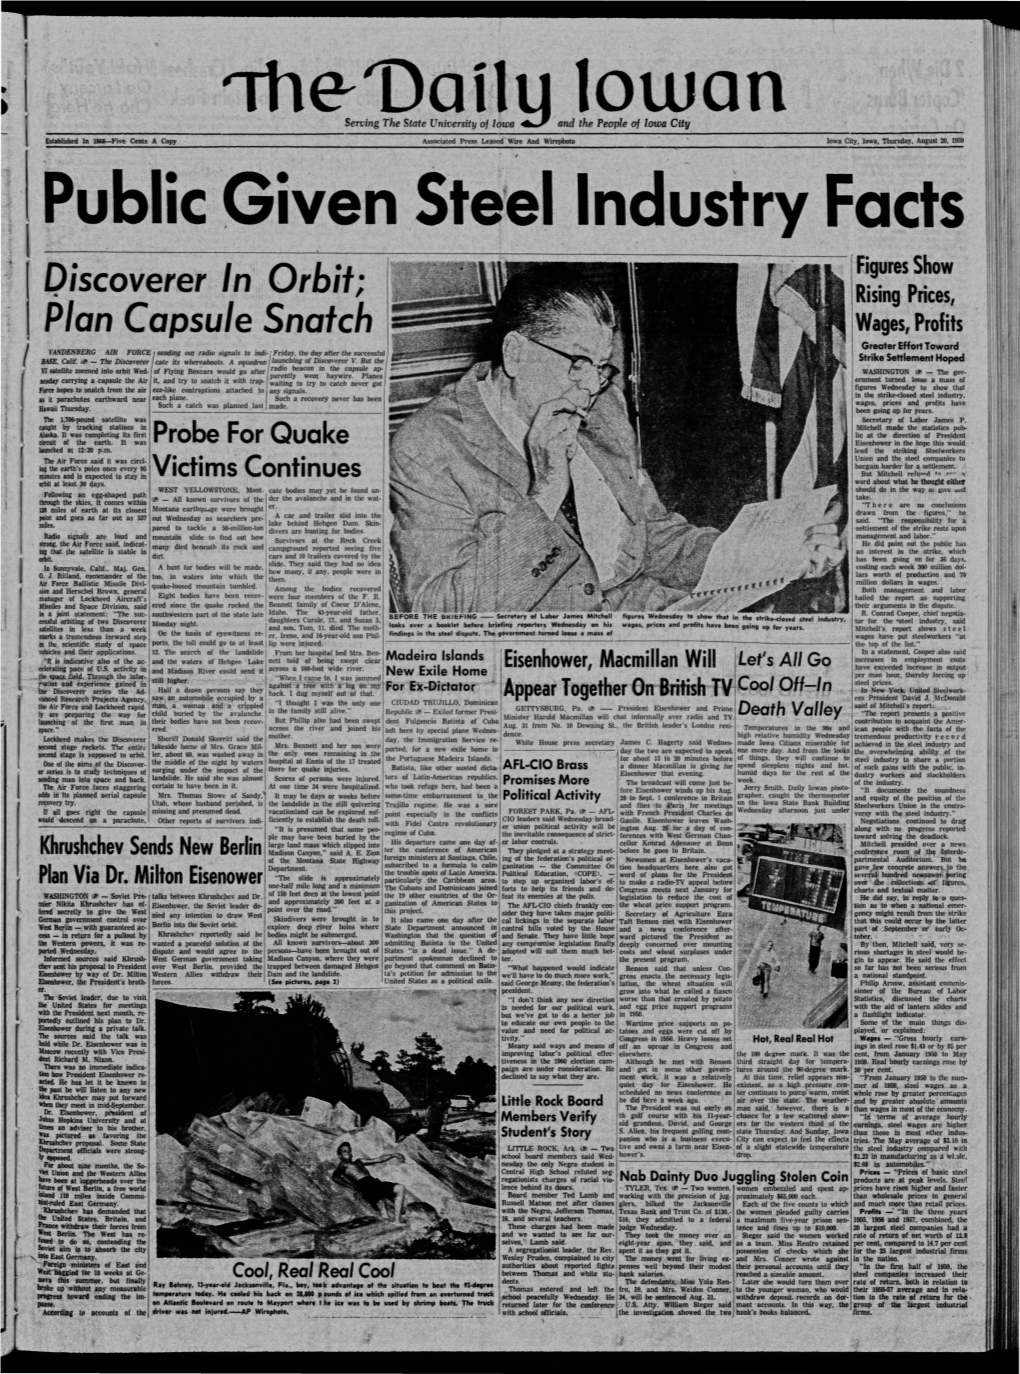 Daily Iowan (Iowa City, Iowa), 1959-08-20